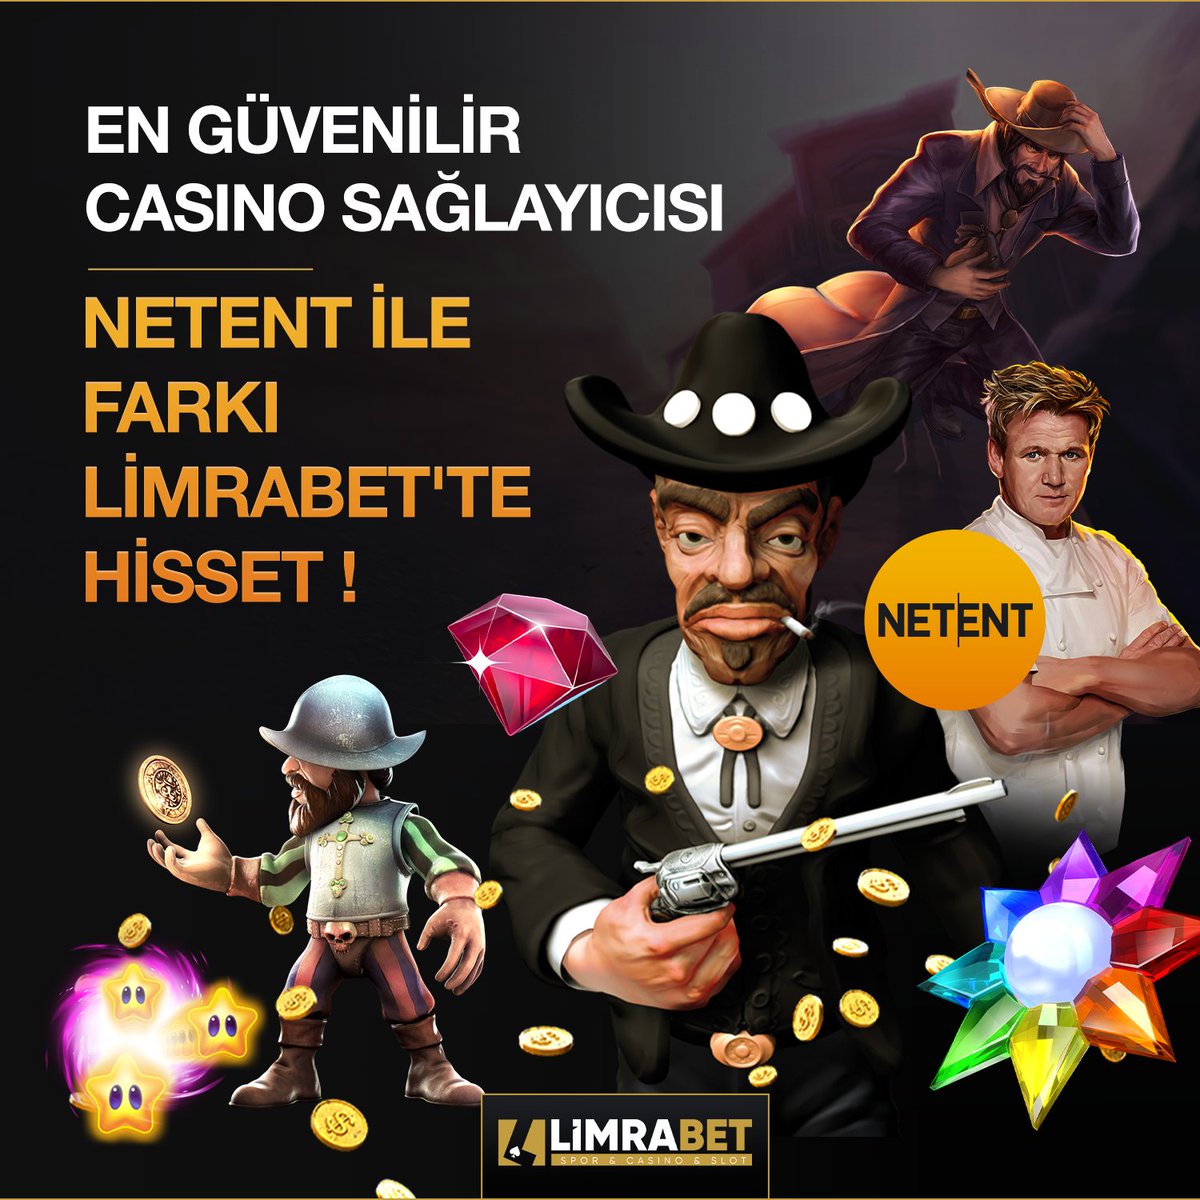 🎰 En güvenilir Casino sağlayıcısı NetEnt #Limrabet’te!

🎁 50₺ Deneme Bonusu!

⚡️ %30 Casino Kayıp Bonusu!

✔️ Hepsi ve daha fazlası için doğru adres #Limrabet!

📱 bit.ly/limrabetgiris